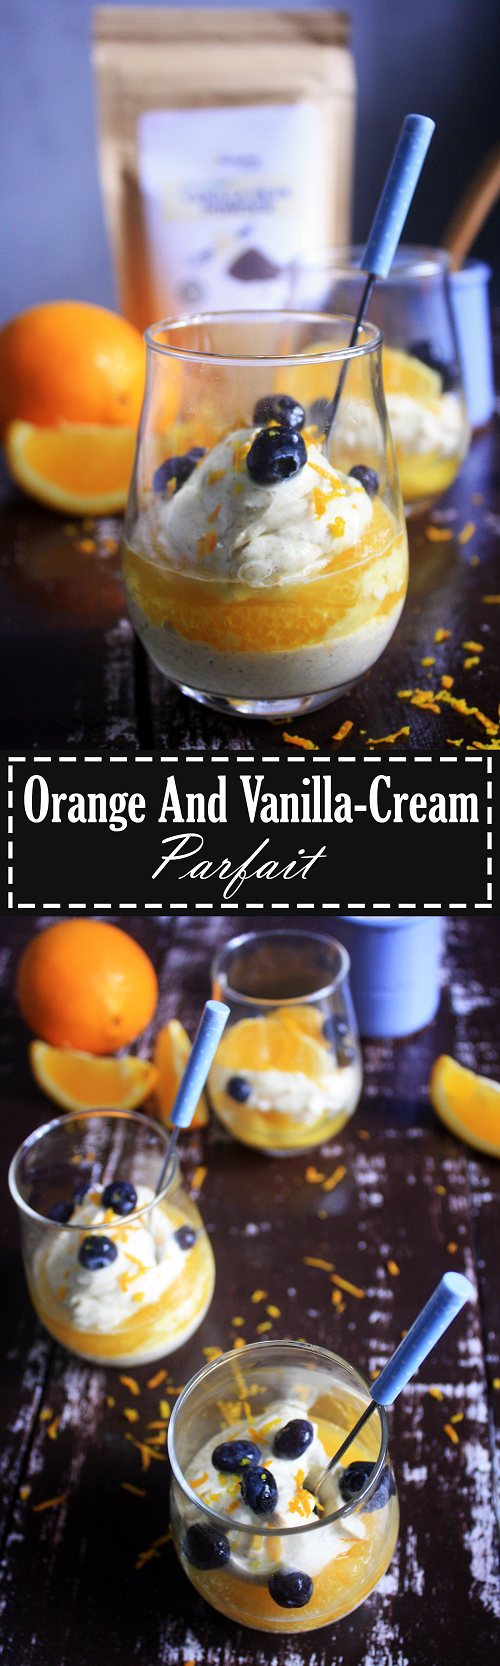 Easy Paleo Orange & Vanilla Cream Parfait Recipe by Summer Day Naturals